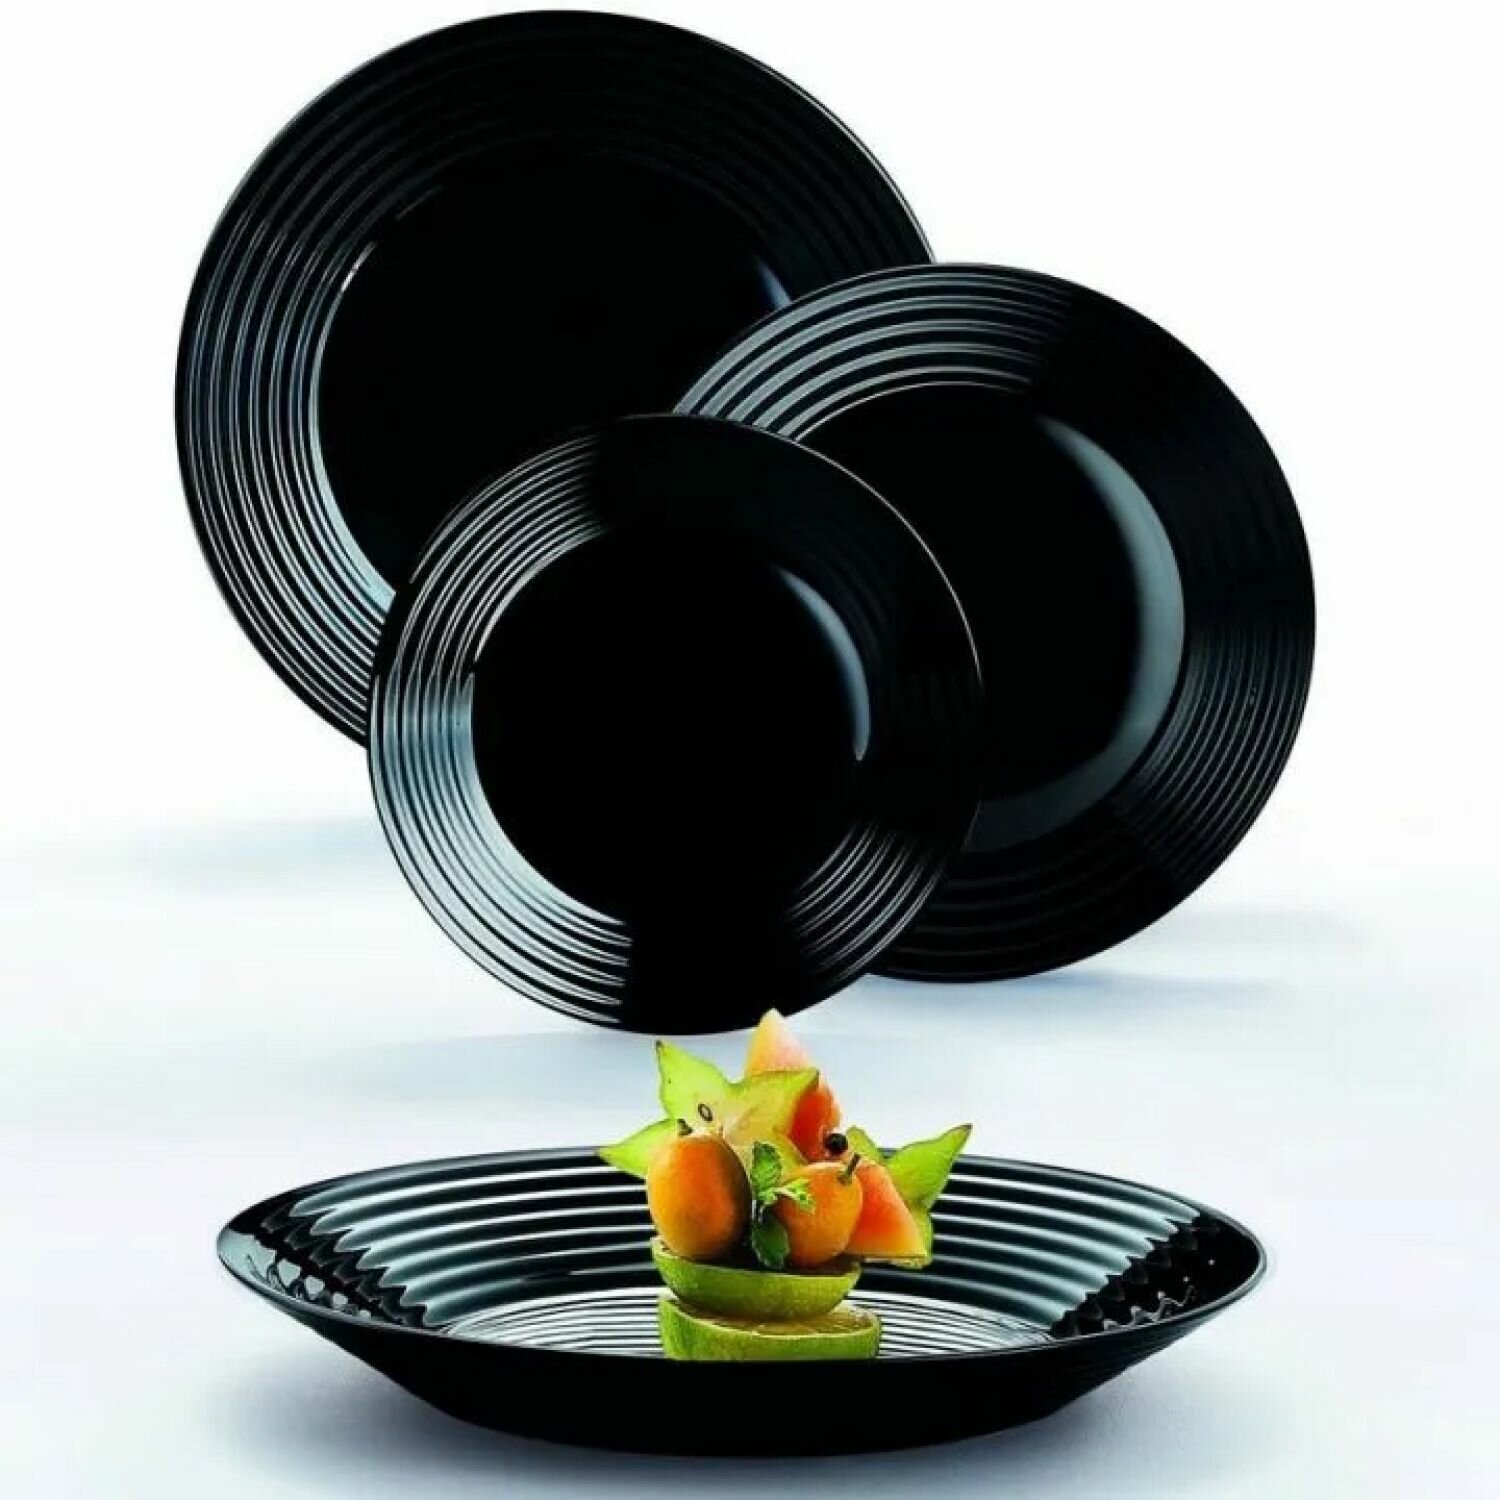 Сервиз столовый Luminarc N5162 обеденный набор на 6 персон, 18 предметов, без декоративных элементов, ударопрочное стекло, черный